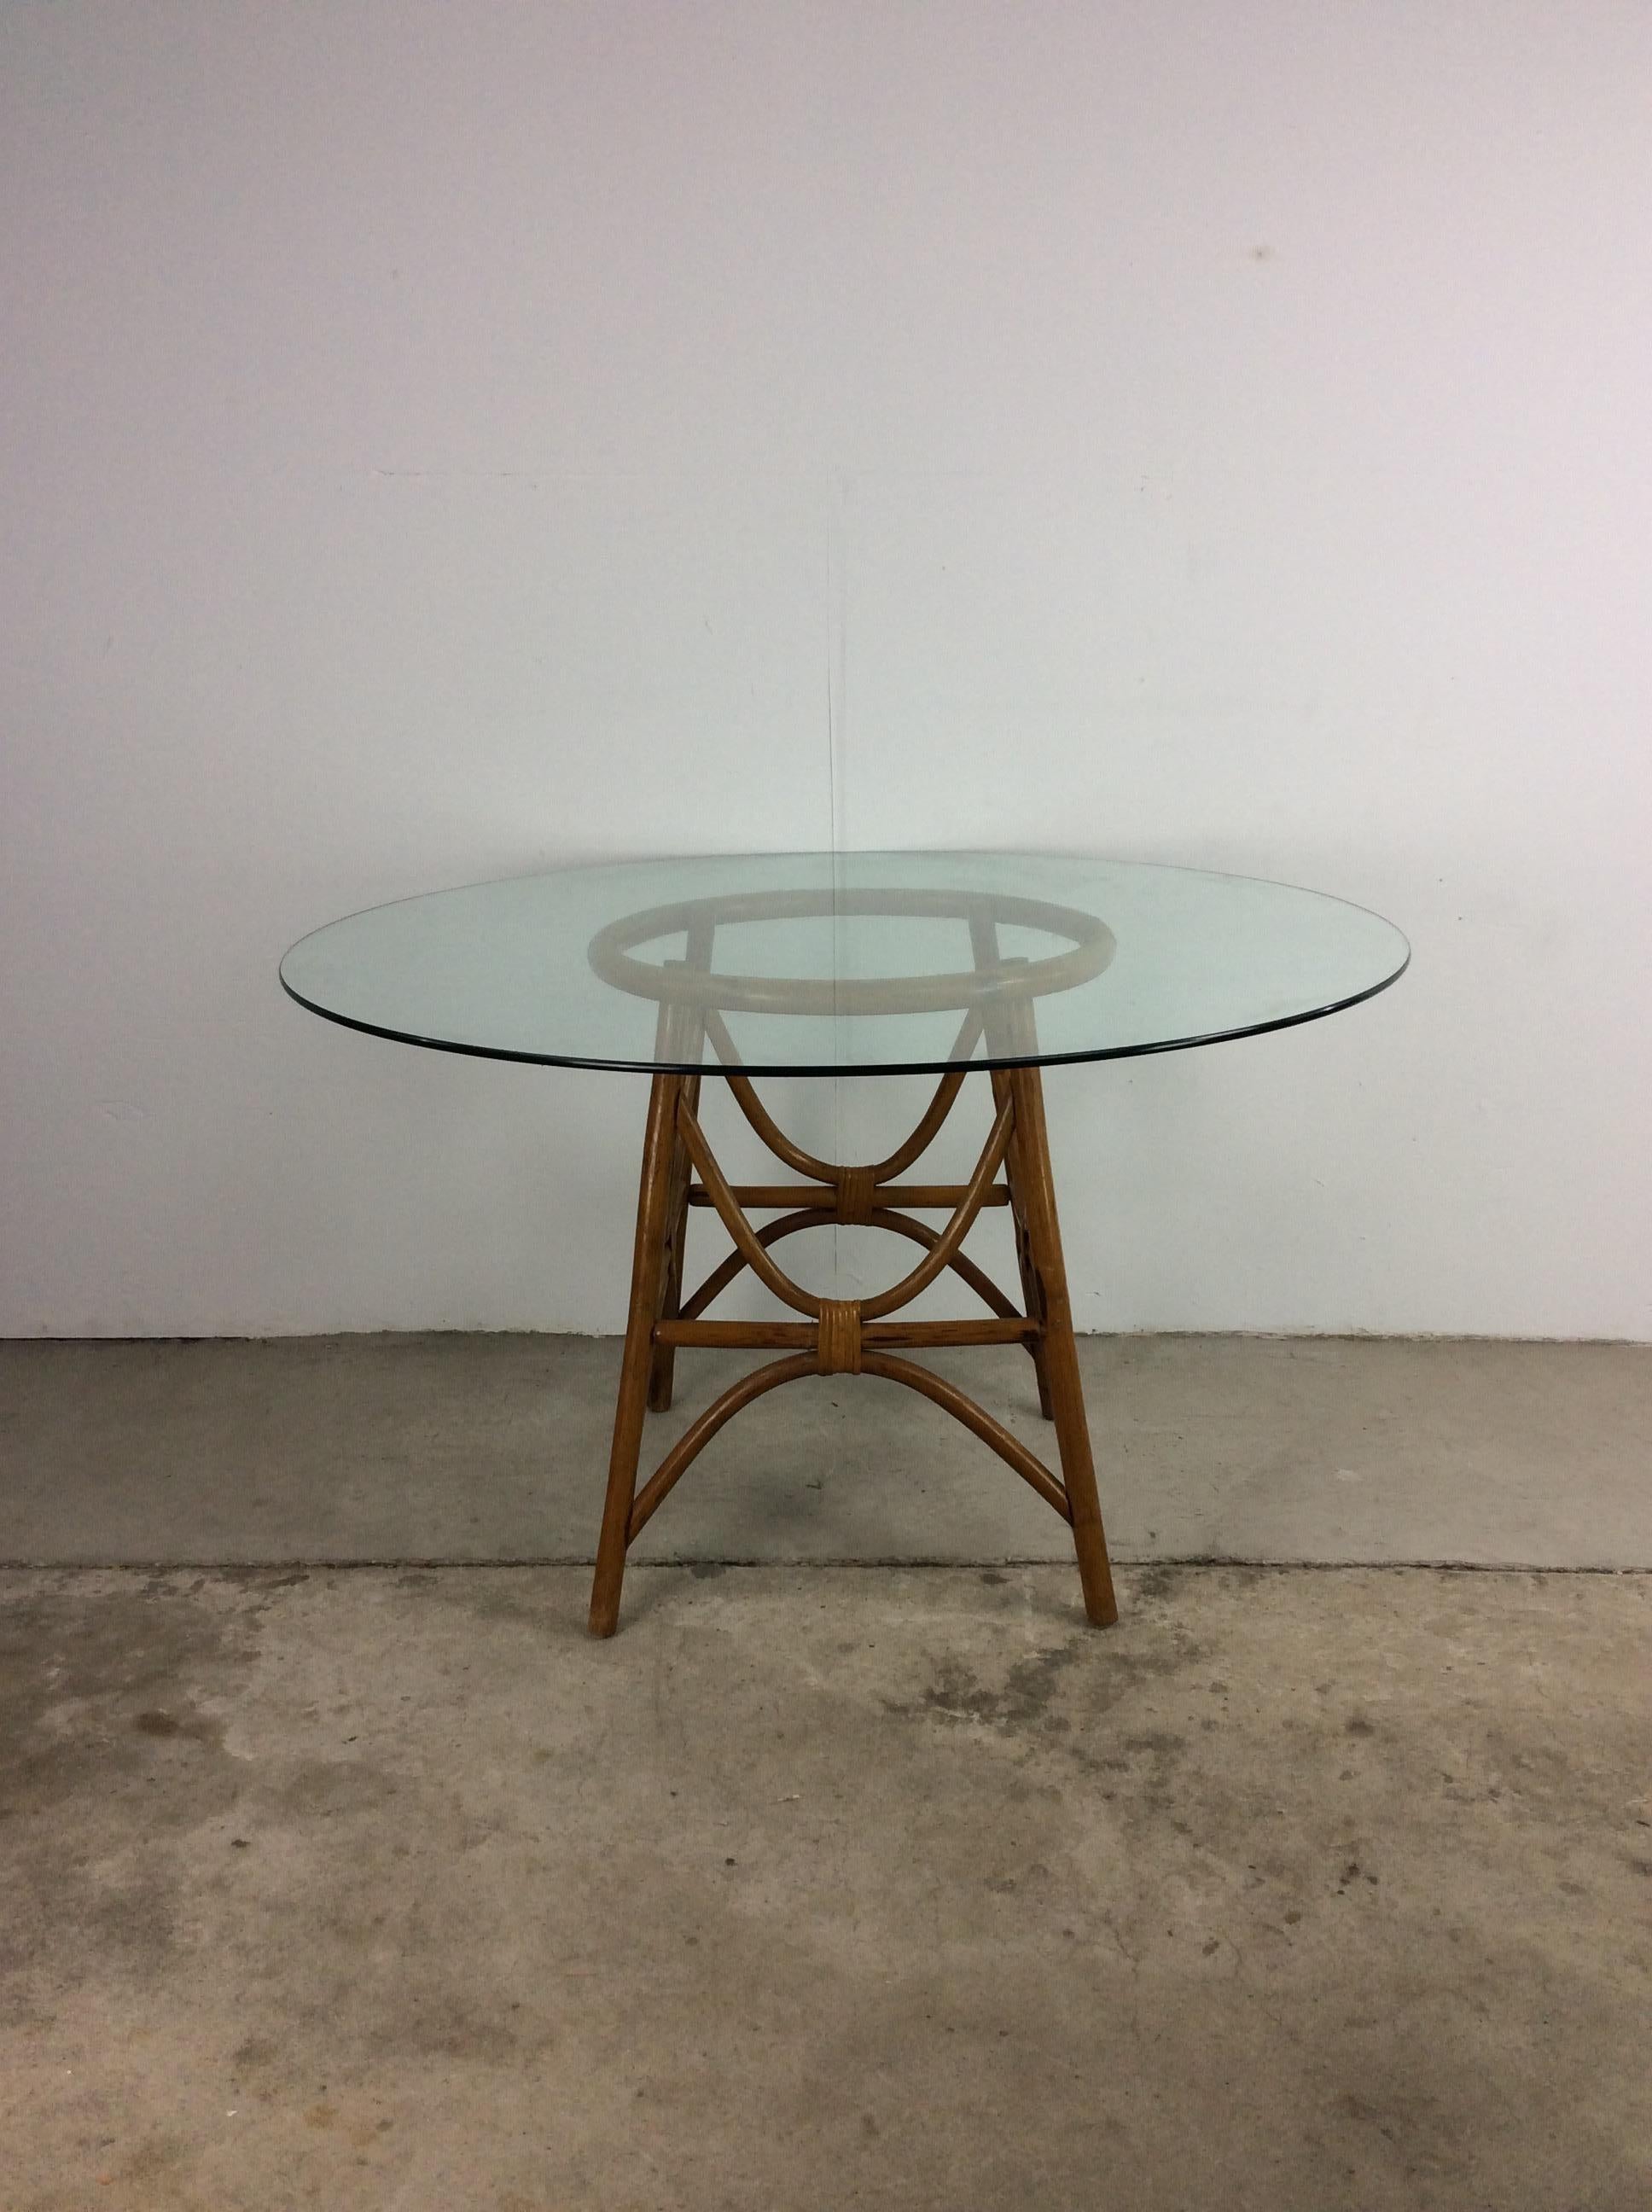 Cette table vintage Boho Chic présente un plateau rond en verre et une base en rotin à piédestal.

Les 4 chaises pivotantes assorties sont disponibles séparément.

Dimensions : 47.5w 47.5 28.5h

Condit : La base en rotin est robuste mais présente